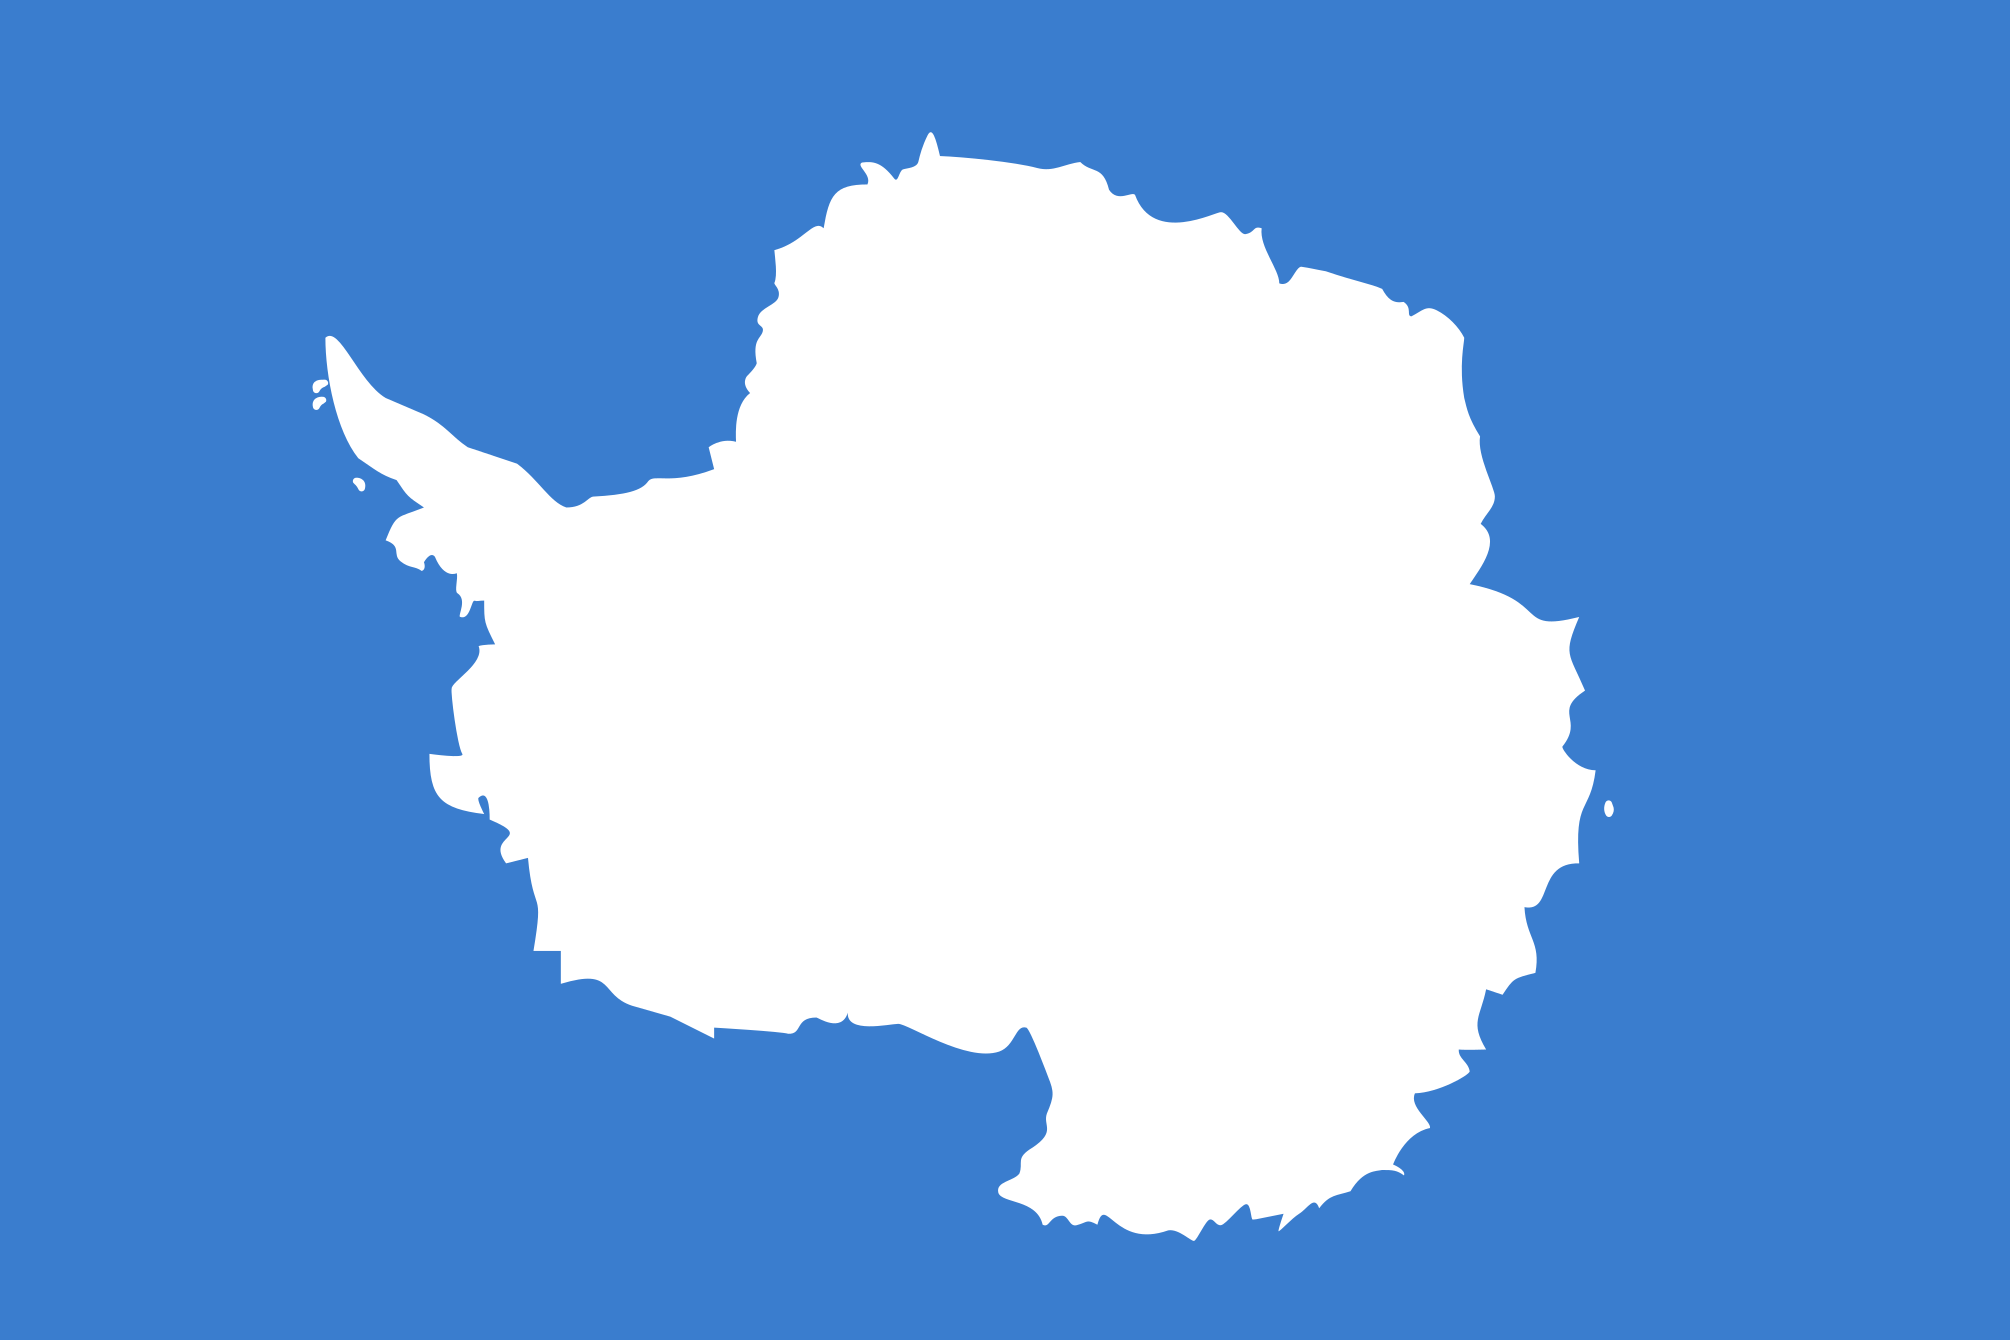 Imagem, bandeira do estado do estado da Antártica - na resolucao de 2010x1340 - Antártida